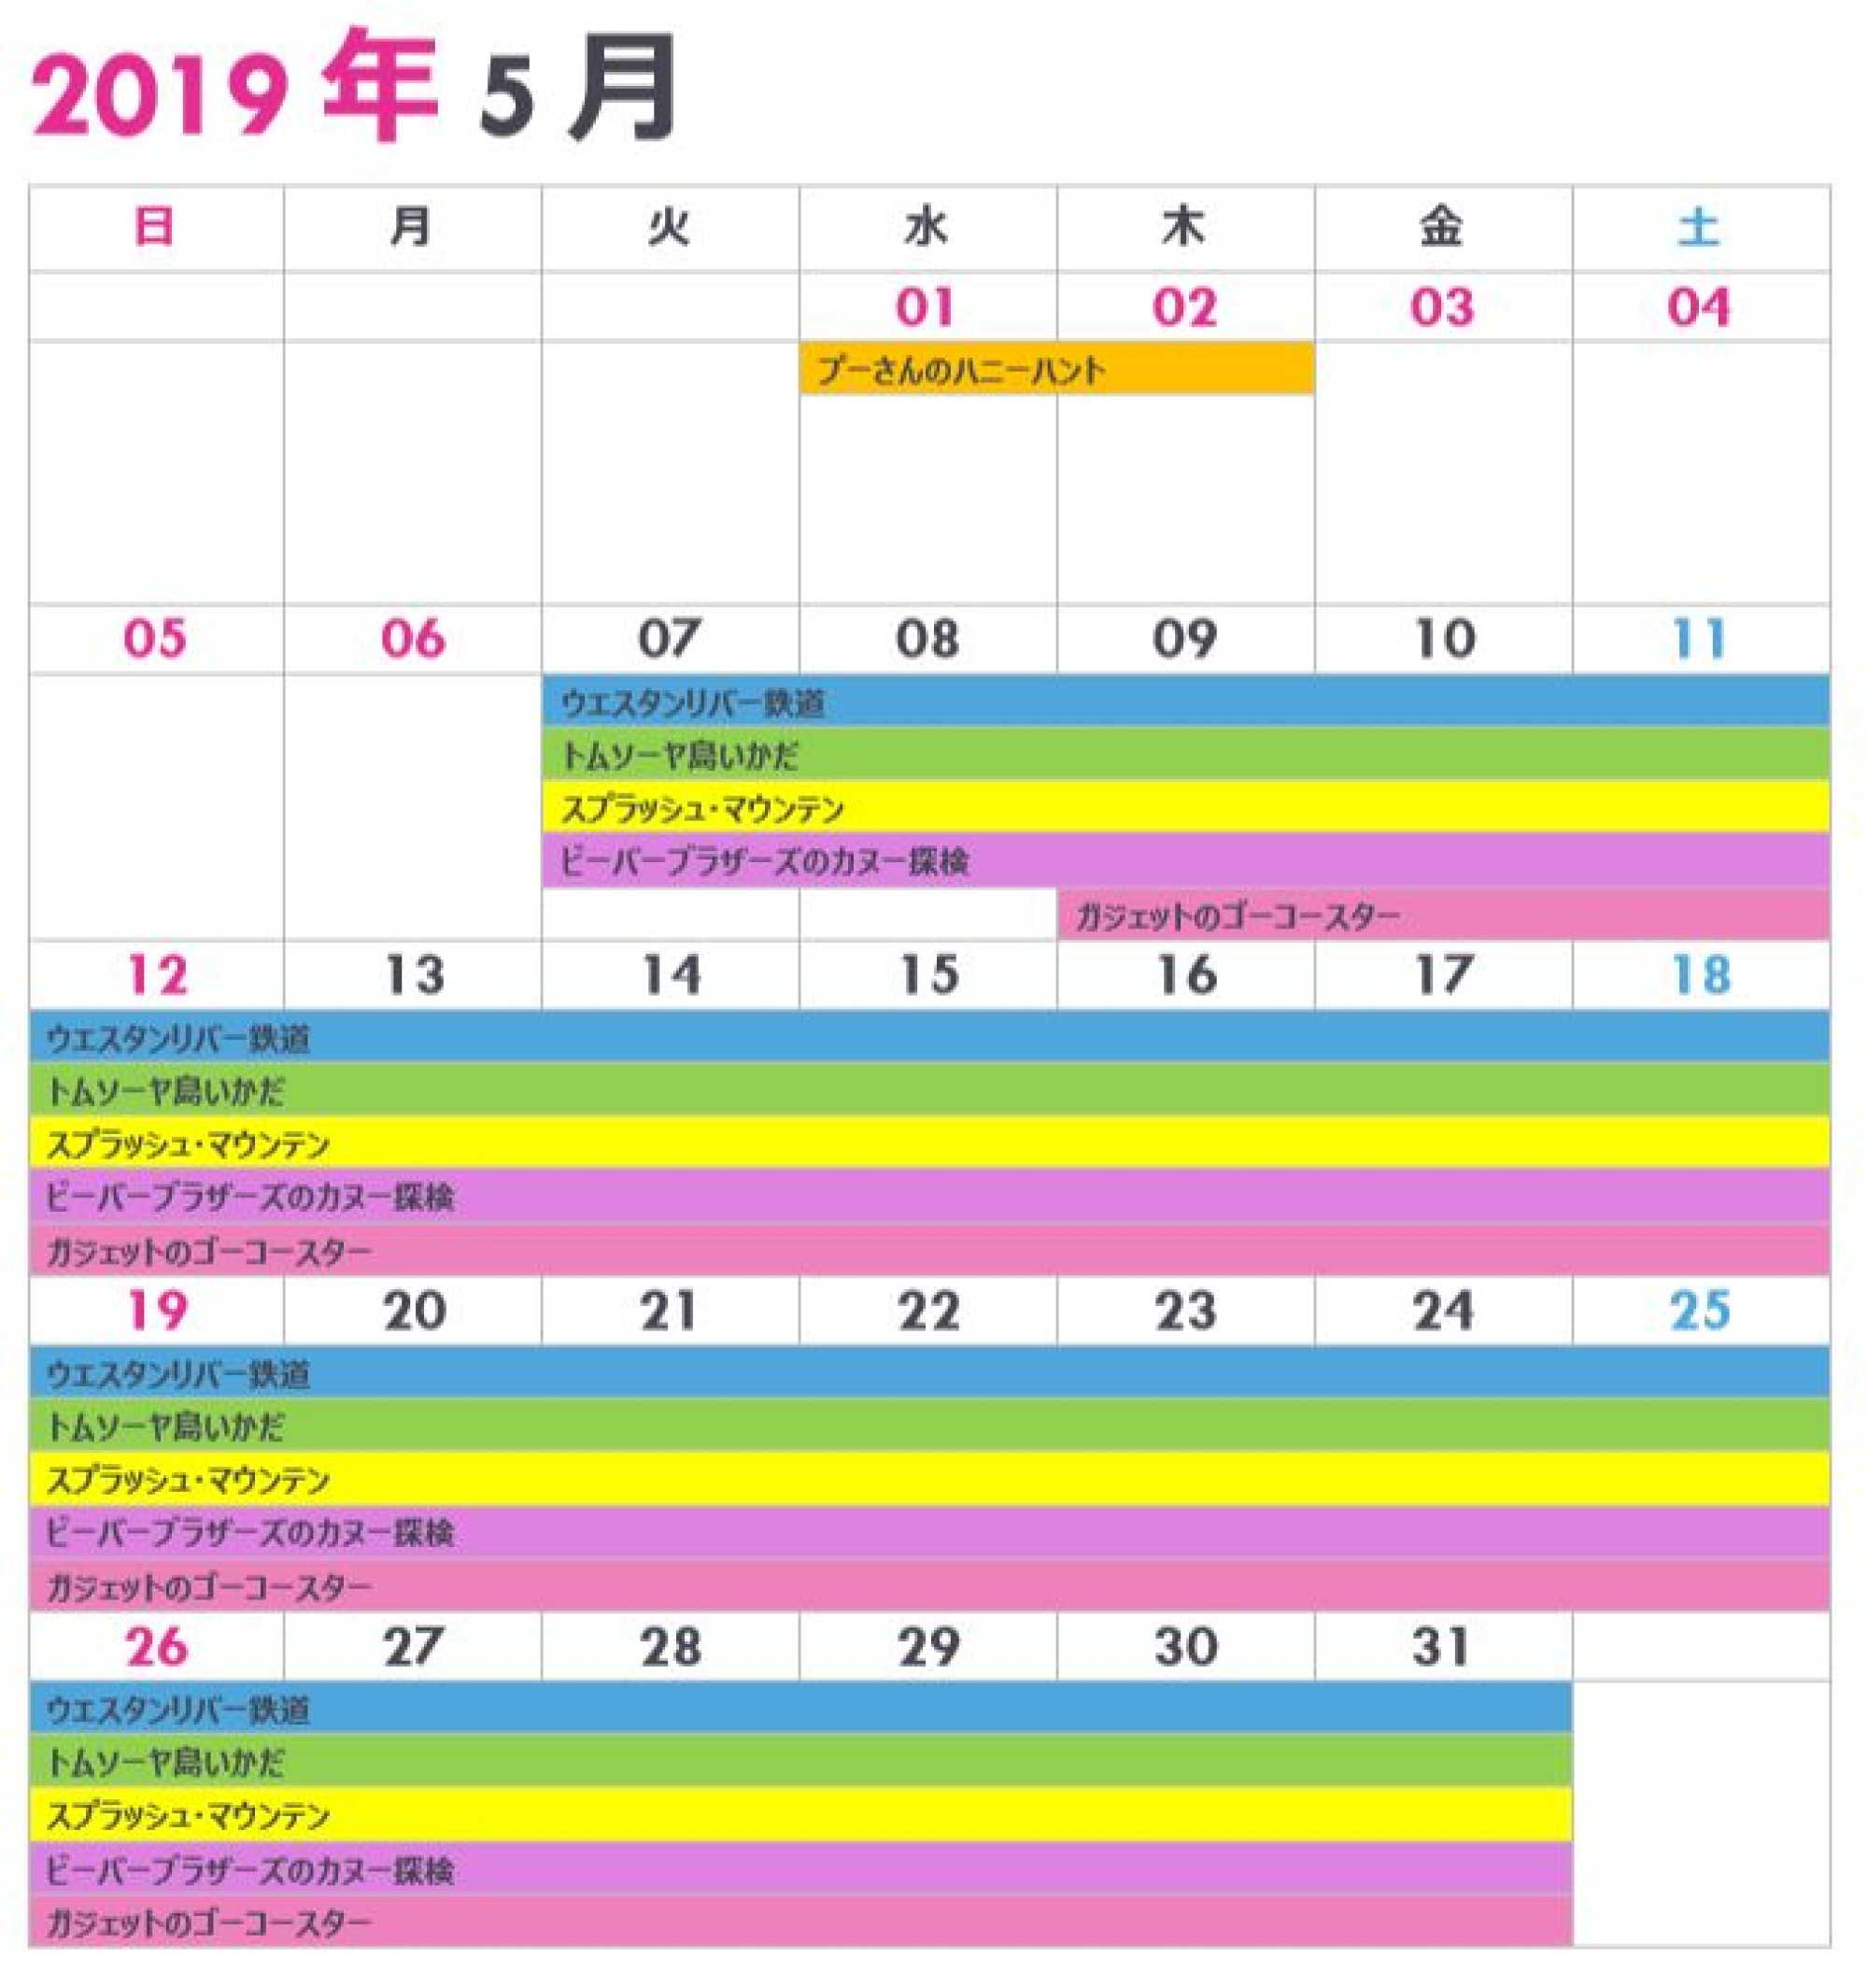 東京ディズニーランドの休止 リハブカレンダー 19年5月 キャステル Castel ディズニー情報